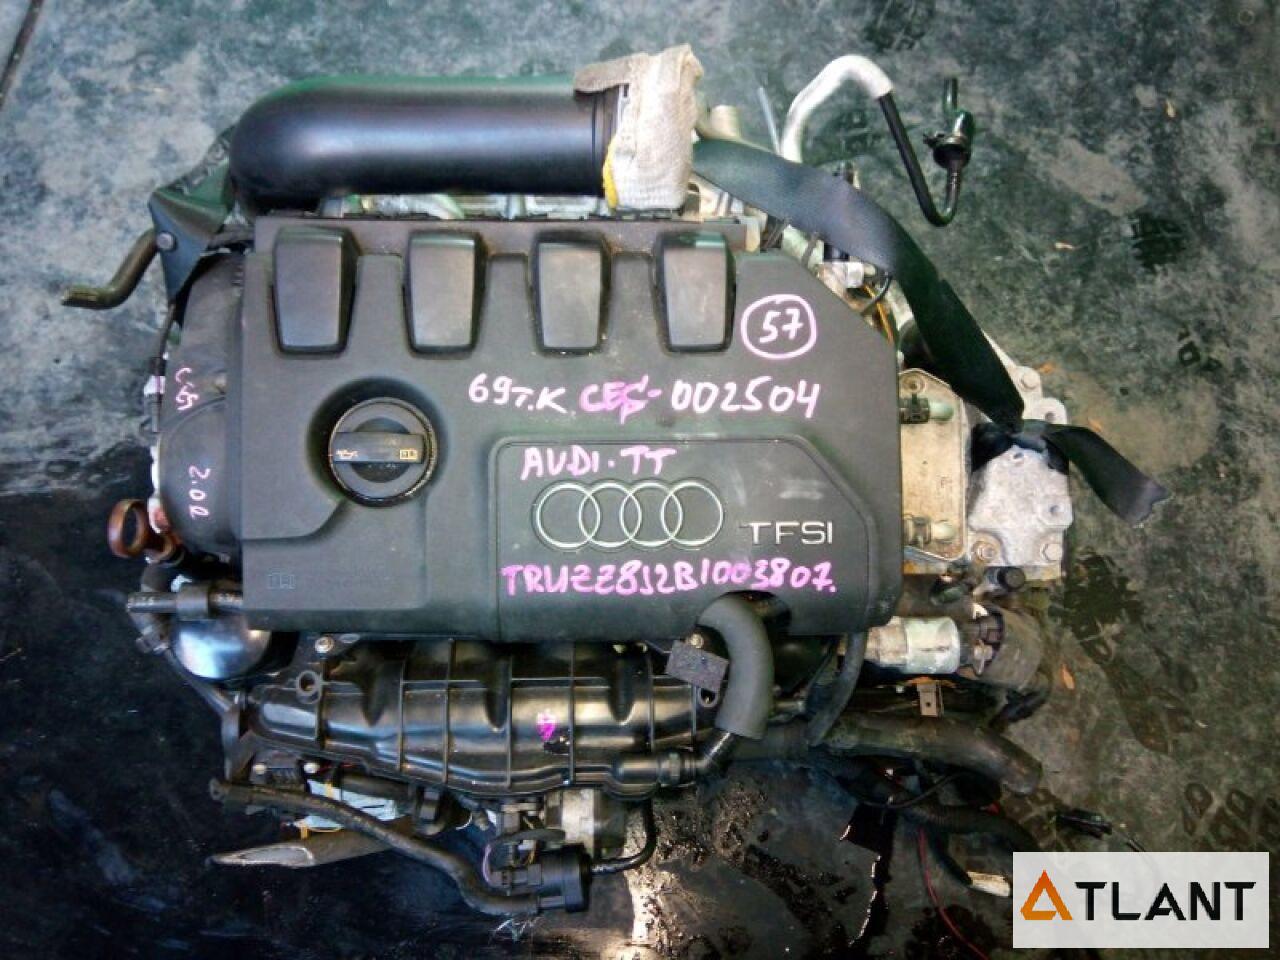 Запчасть Двигатель  AUDI TT 002504 Контрактный коса, мозги, А/Т, 2WD, турбо, 69 км, VIN-TRUZZ8J2B1003807